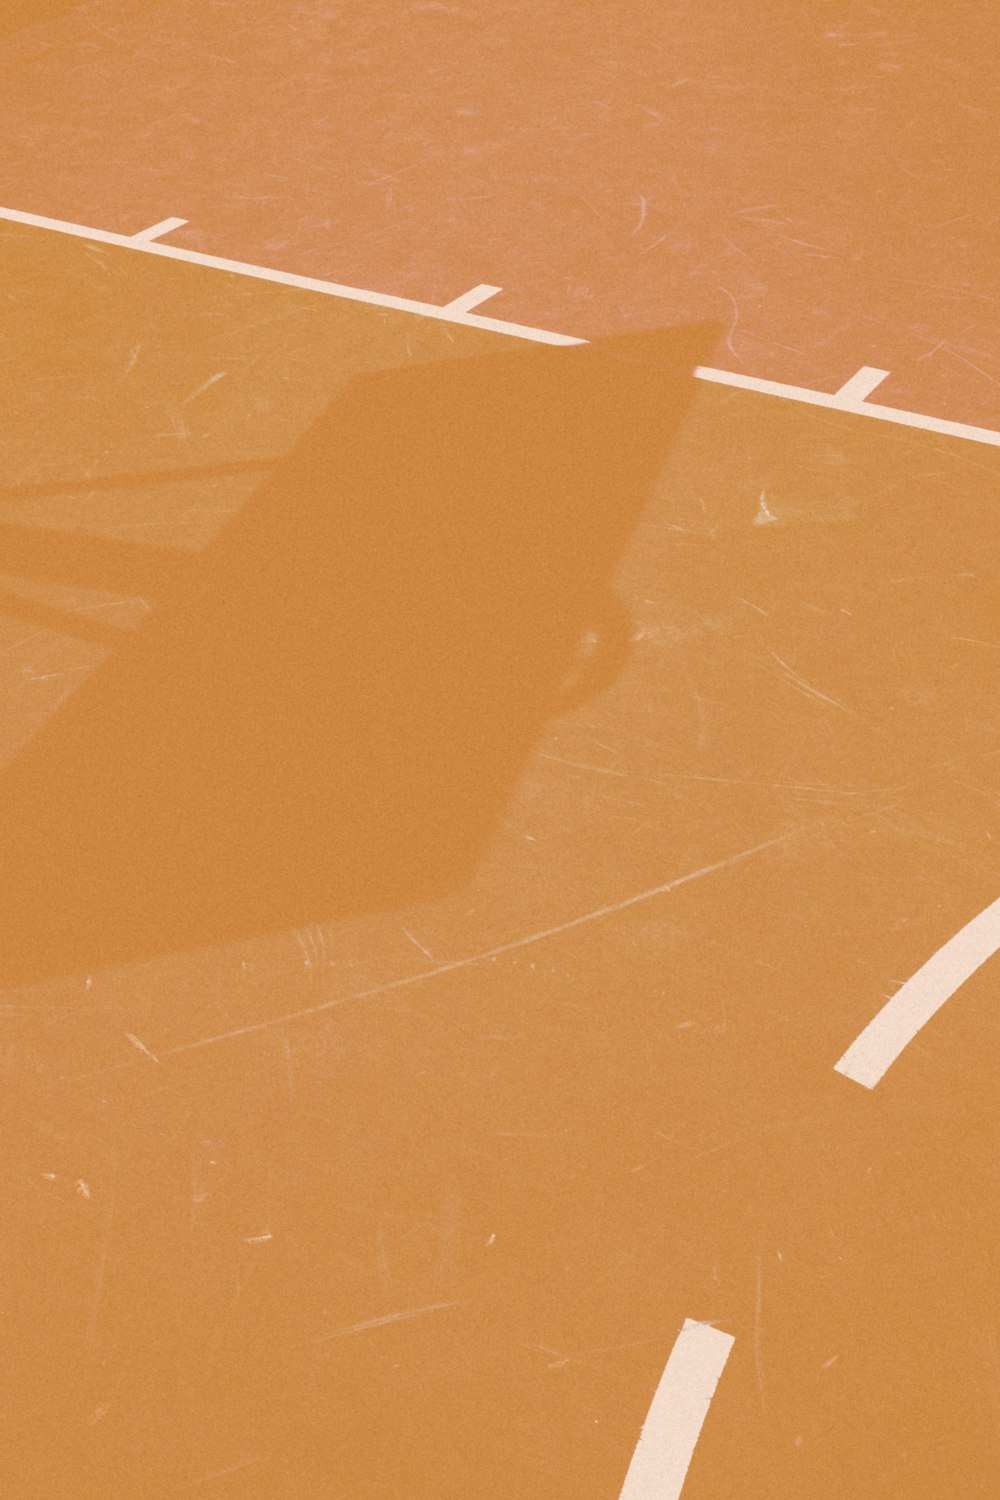 Basketballkorb wirft Schatten auf Linie